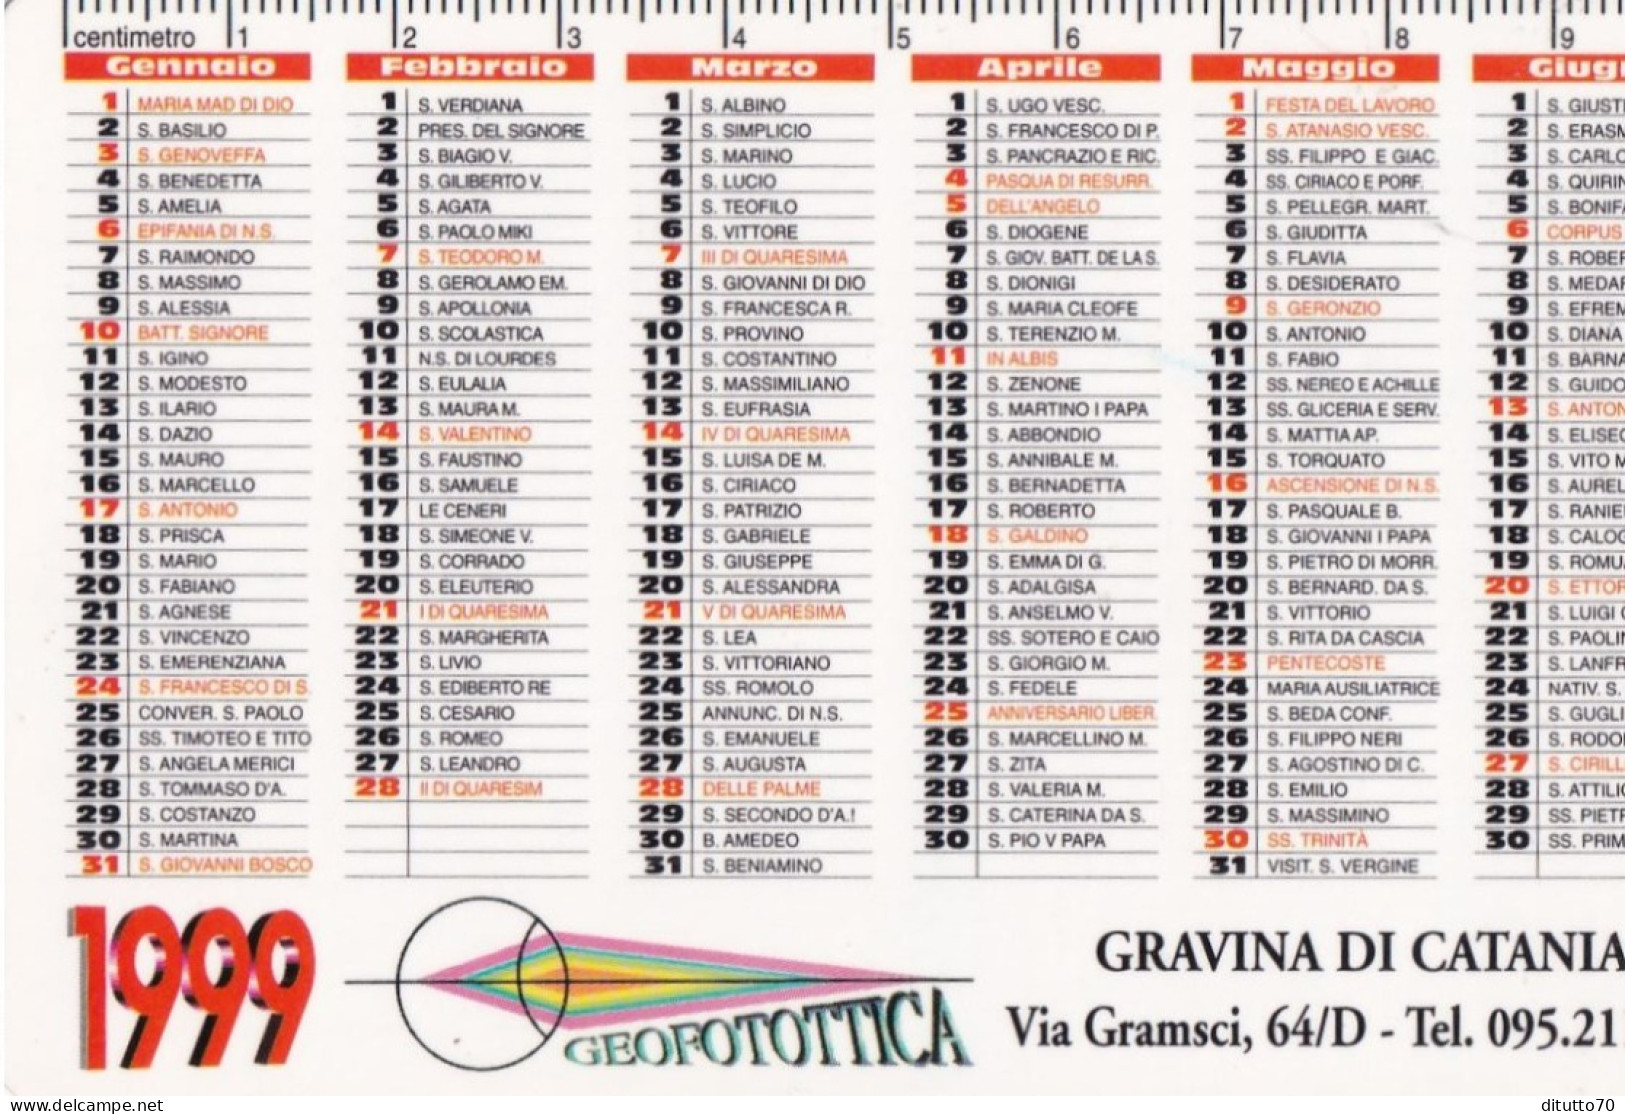 Calendarietto - Geofotottica - Gravina Di Catania - Anno 1999 - Small : 1991-00